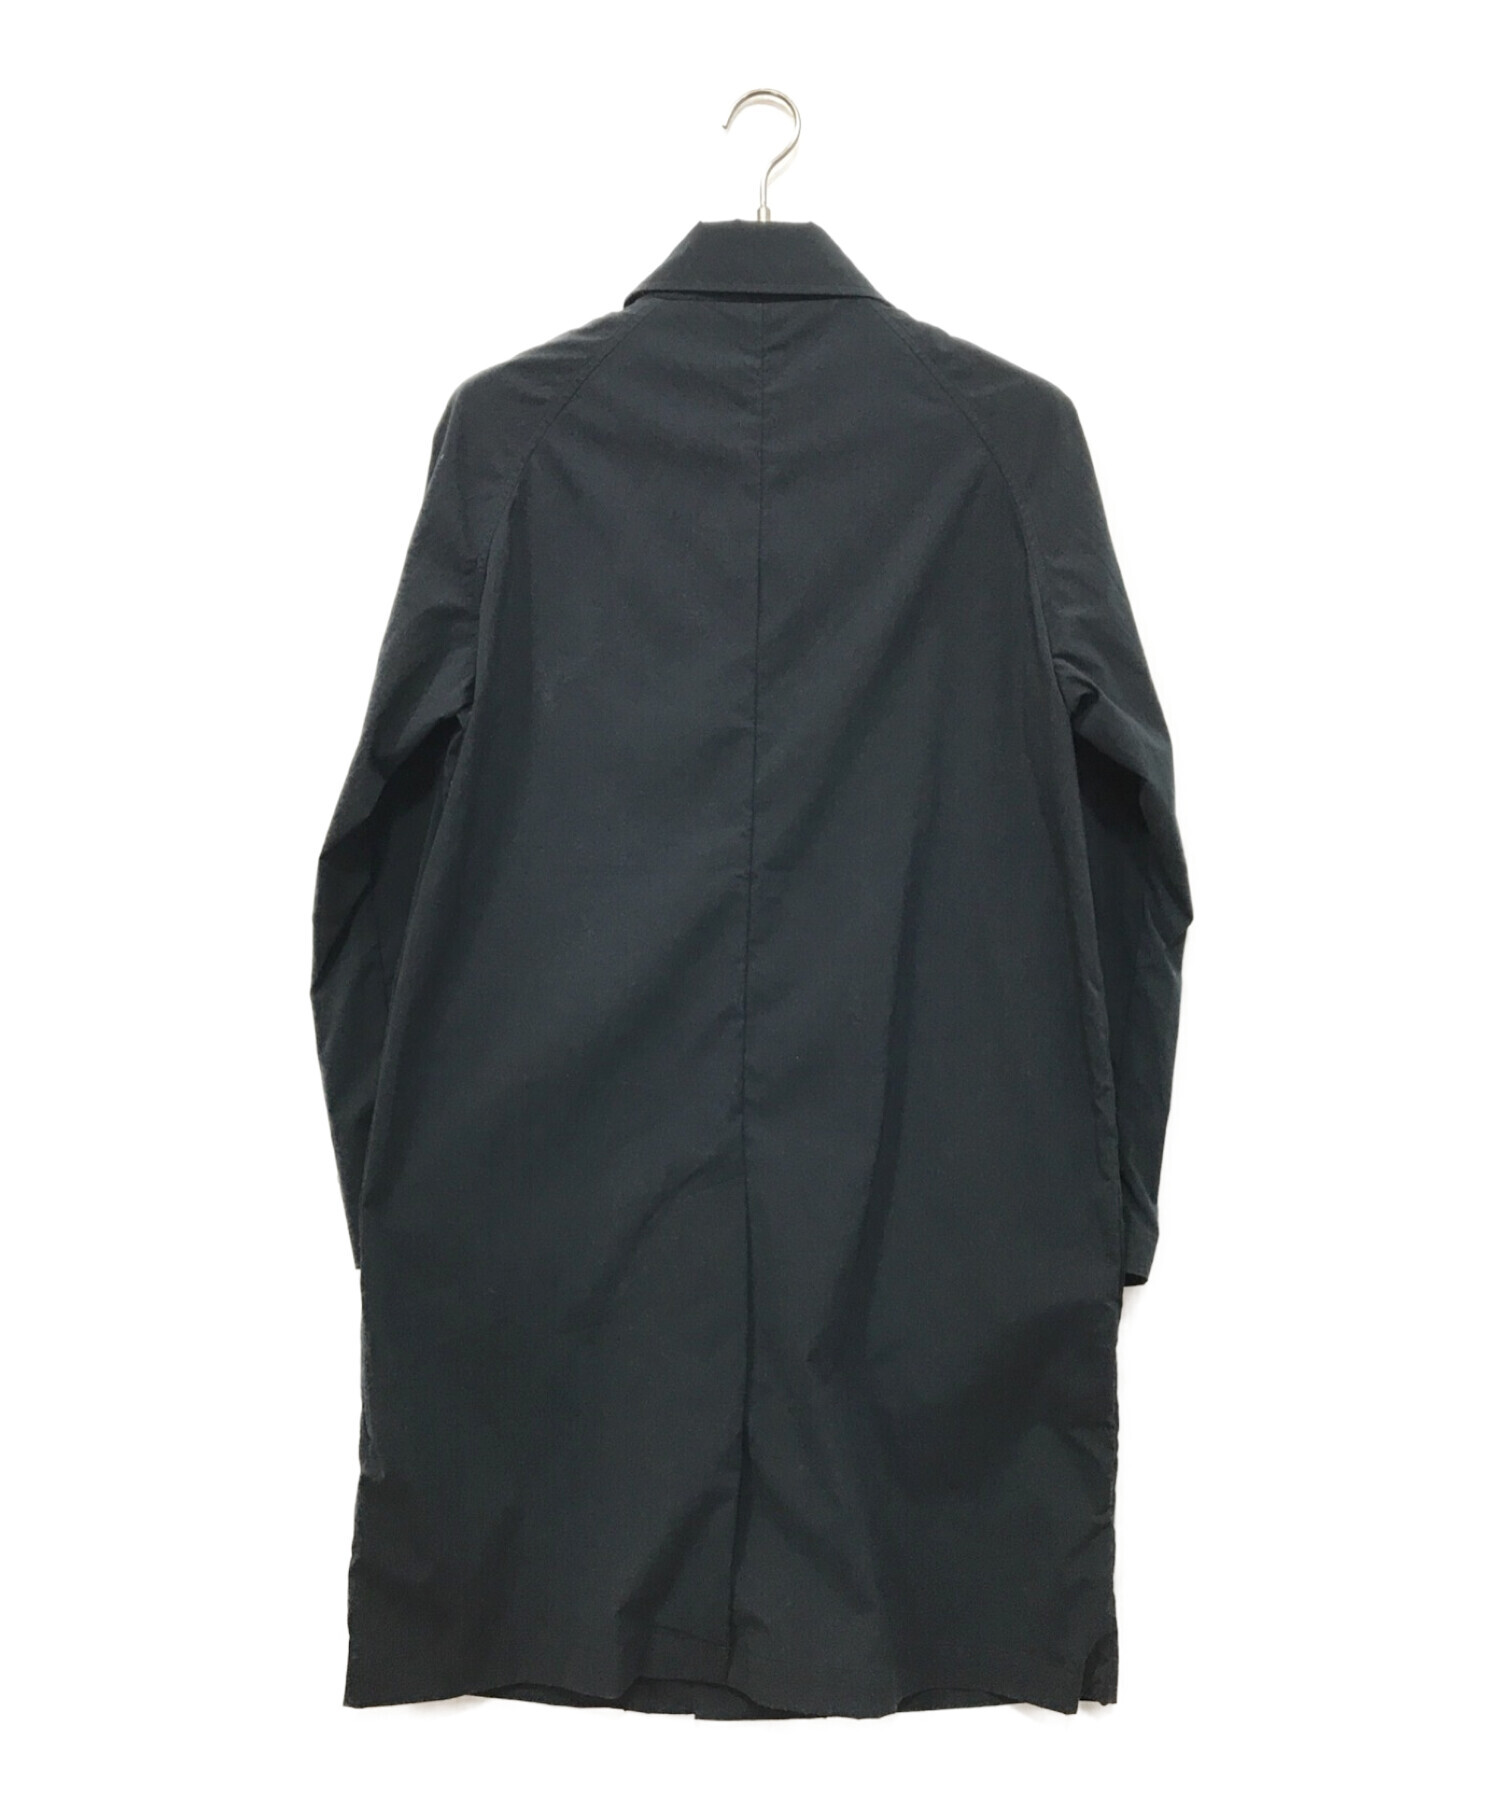 COLUMBIA BLACK LABEL (コロンビアブラックレーベル) トラバースフォークジャケット ブラック サイズ:S